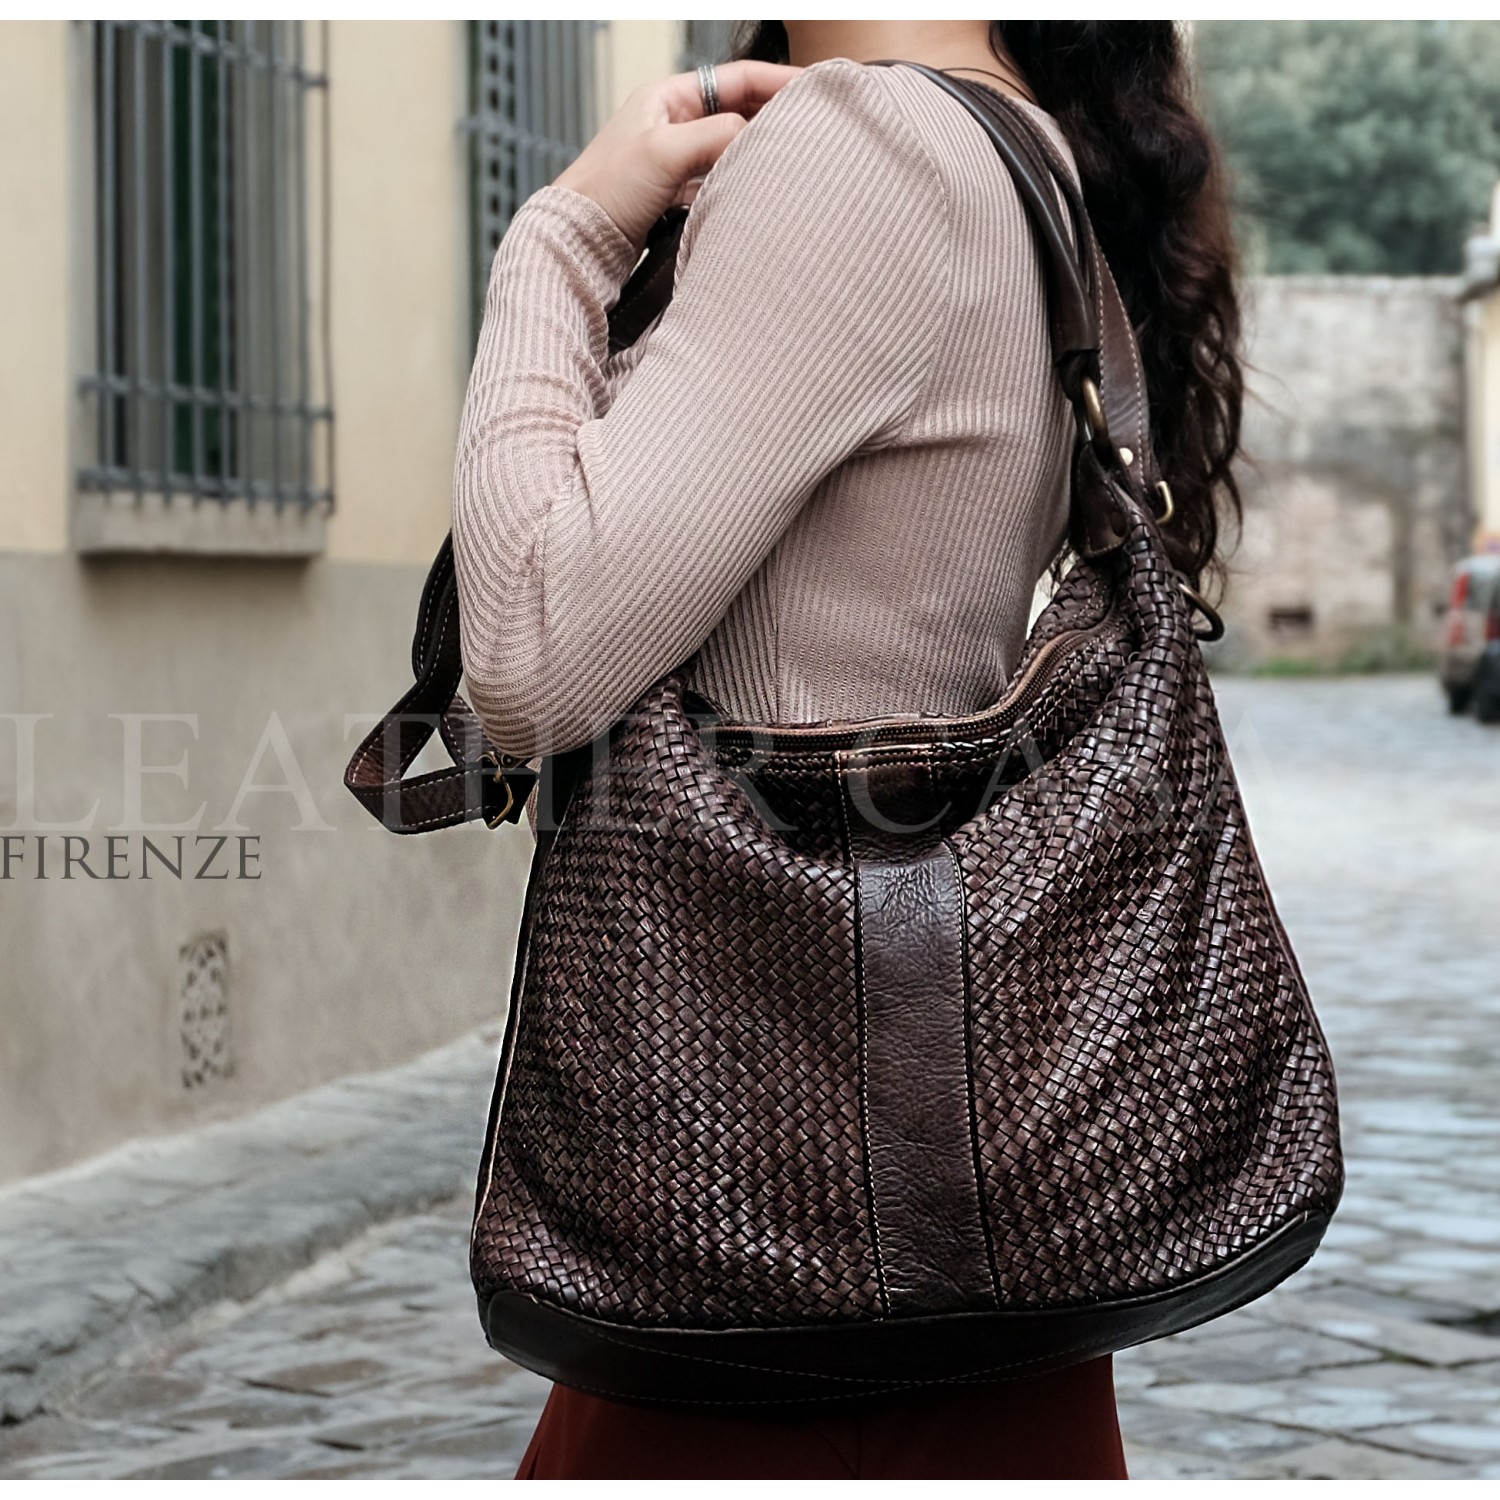 Woven Leather Bag Leather Handbag Florence 